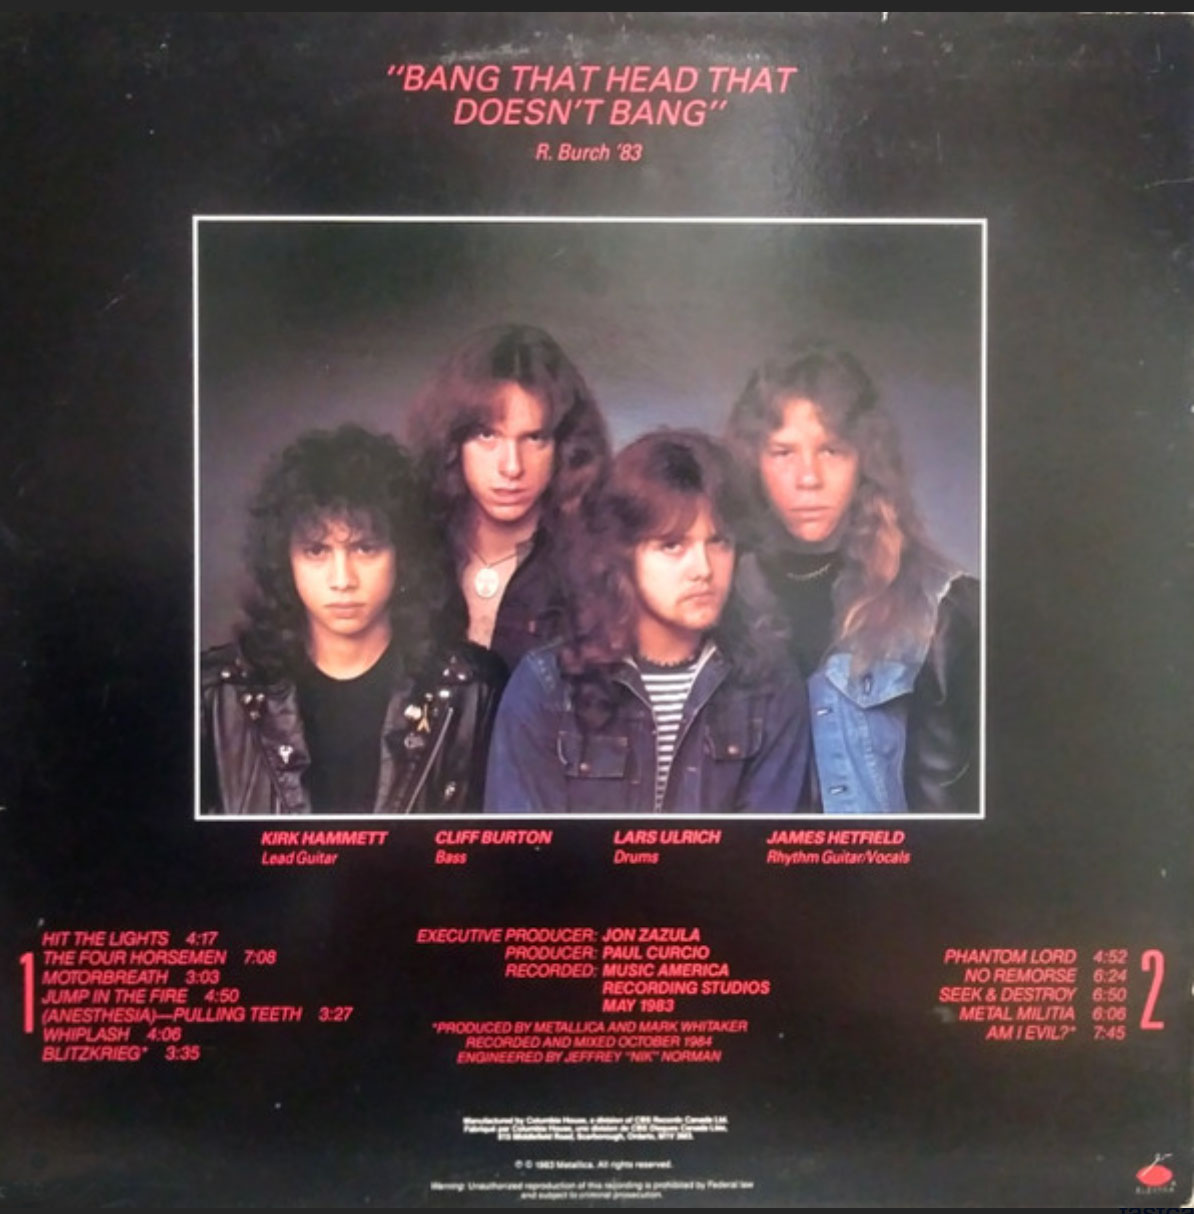 Metallica – Kill 'Em All - Rare 1988 Pressing!